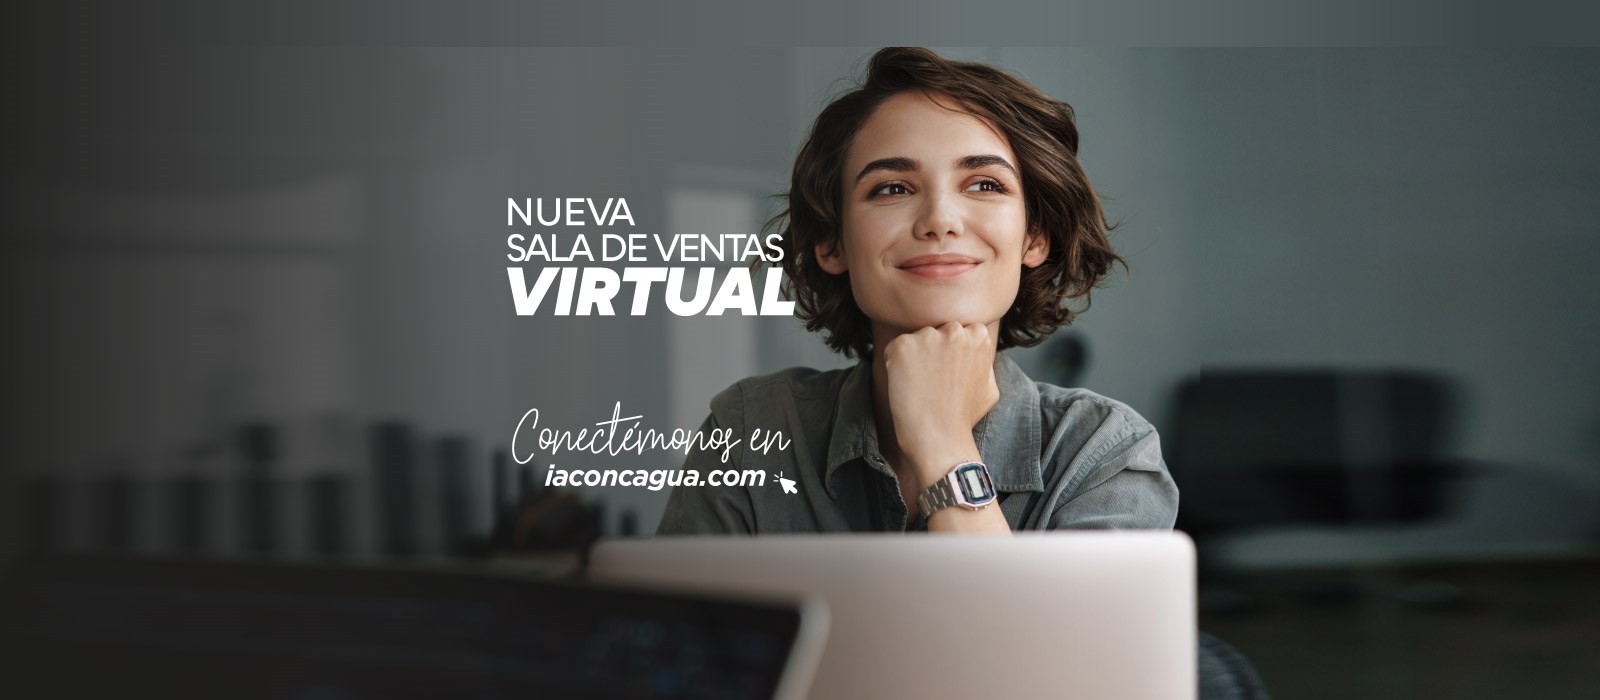 Inmobiliaria Aconcagua presenta su nueva Sala de Ventas Virtual